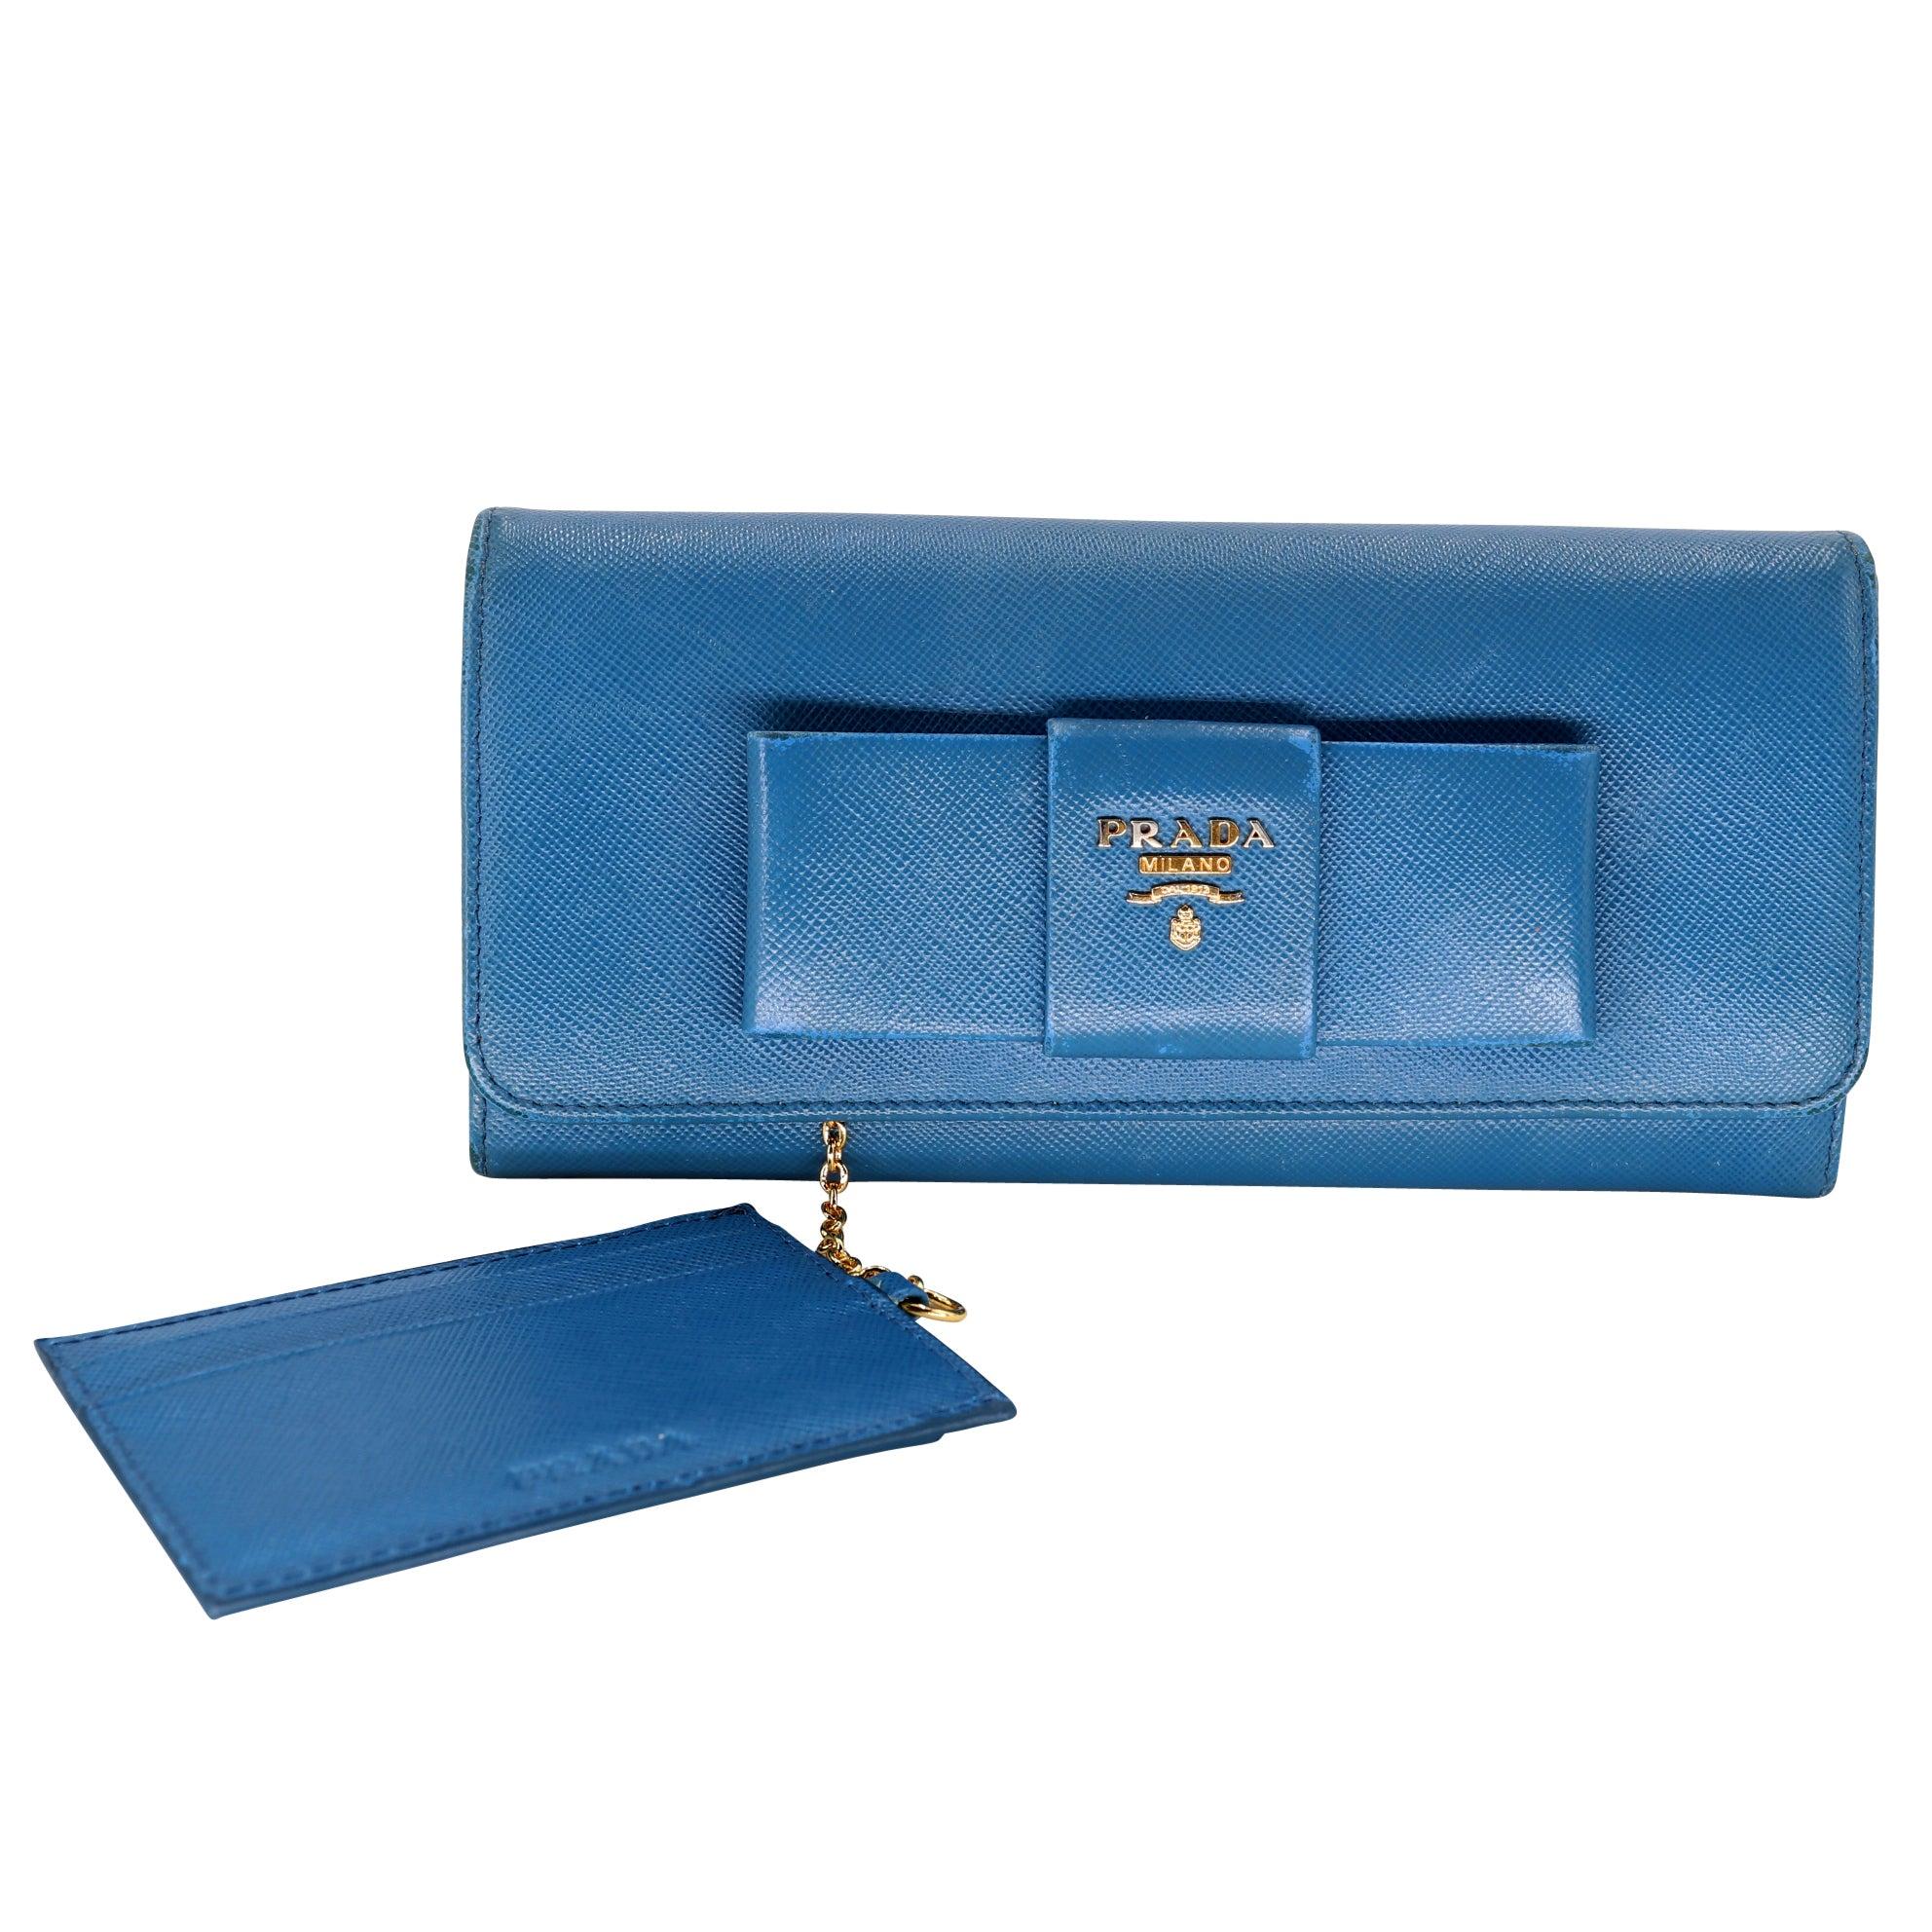 Dieses gebrauchte Prada Portemonnaie ist eine tolle Ergänzung für jede Handtasche oder Sammlung! Das Saffiano-Leder ist strapazierfähig und schön, und die goldfarbenen Beschläge verleihen ihm einen Hauch von Luxus. Der Knopfverschluss hält alles